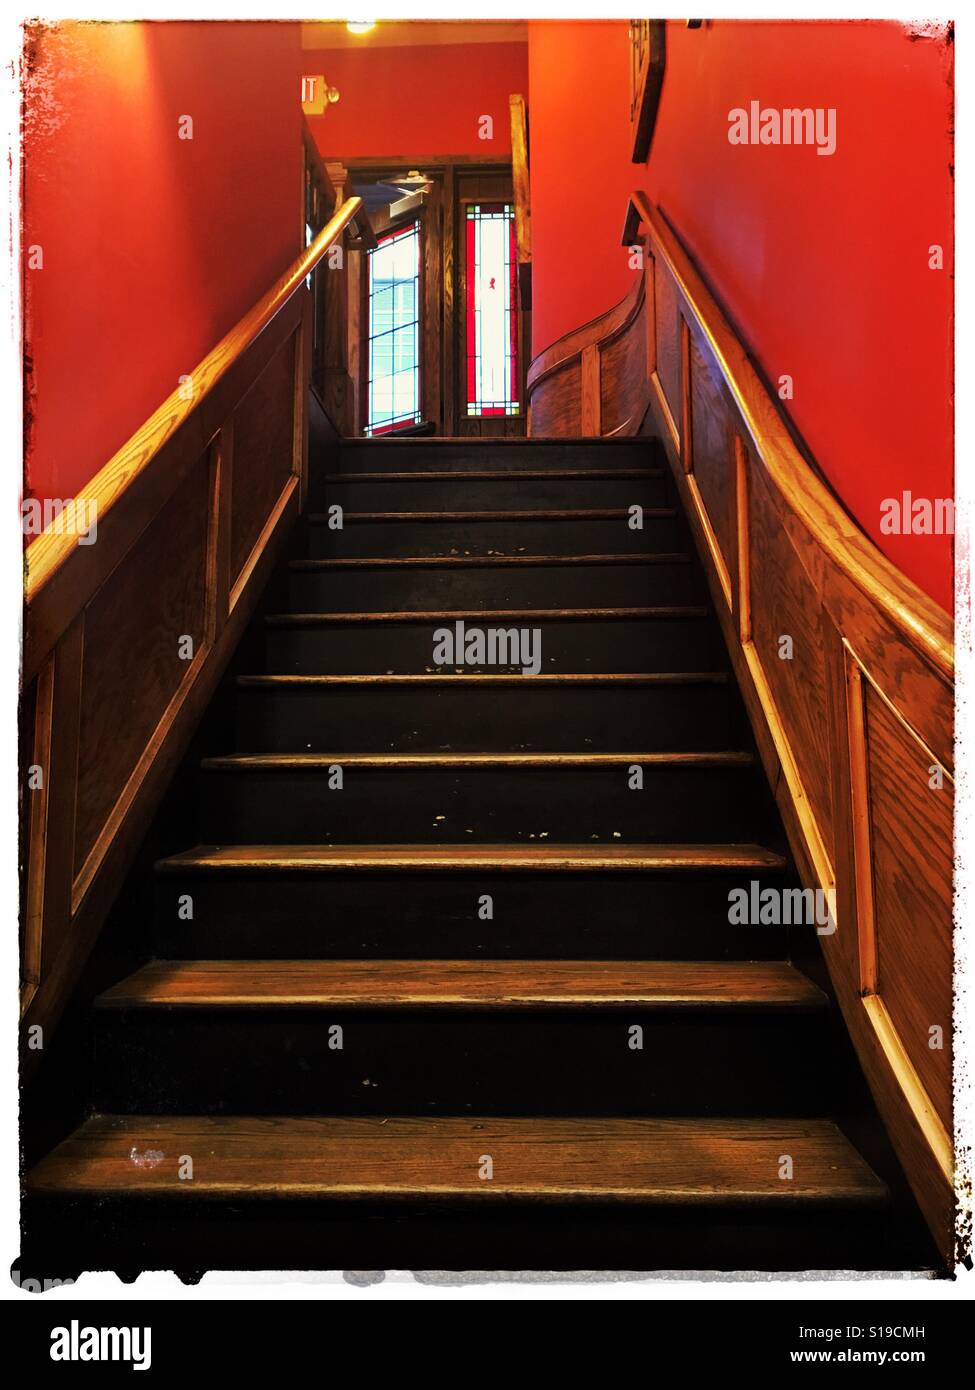 Escalier et les murs rouge Banque D'Images